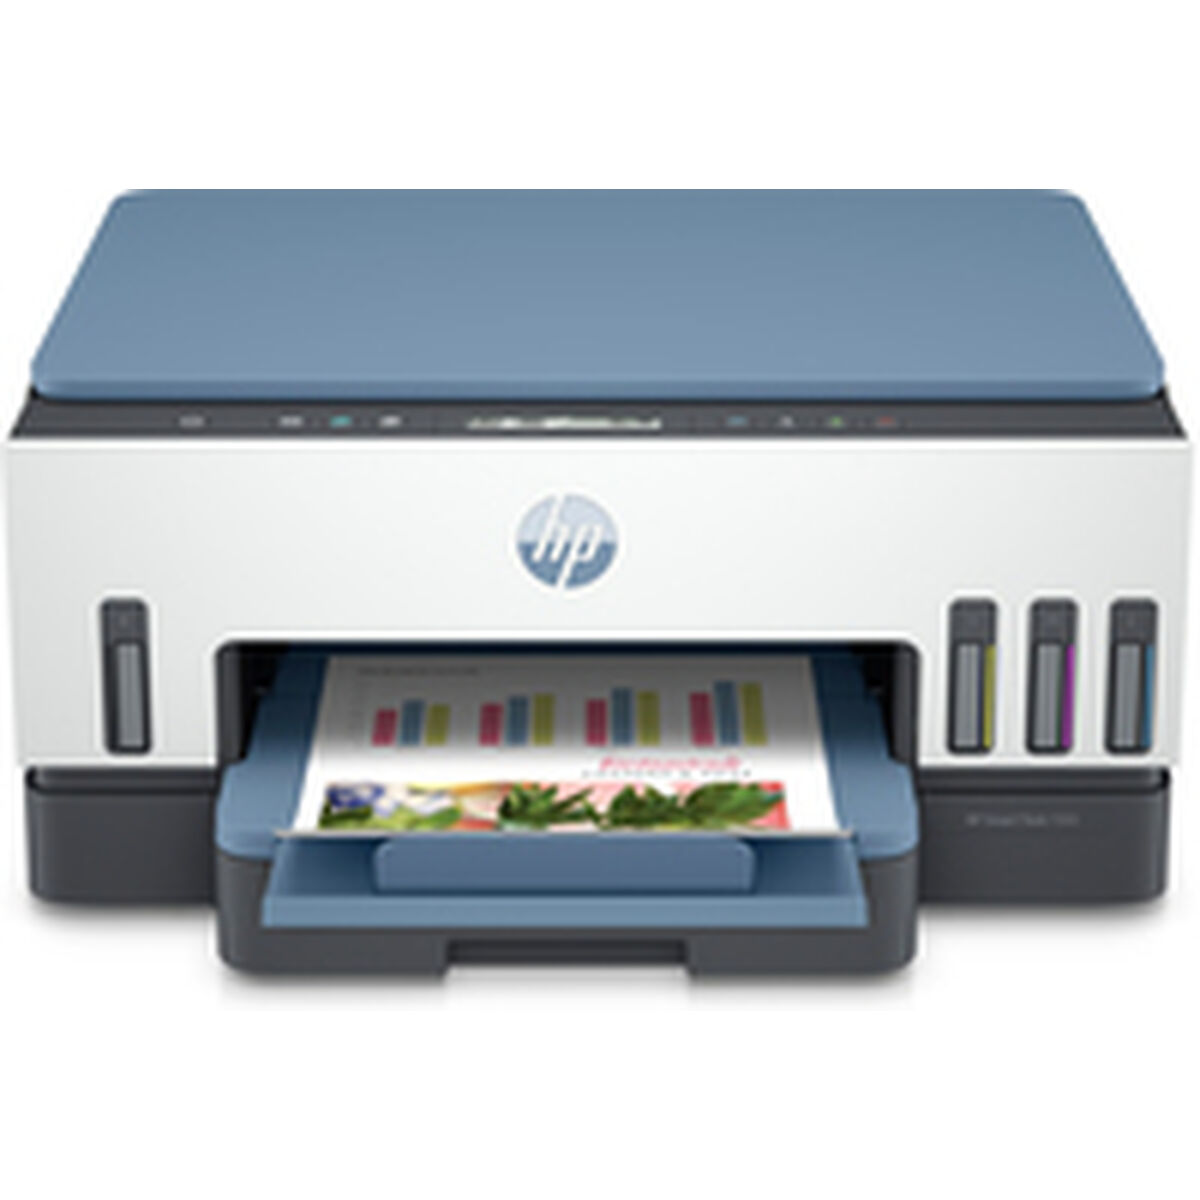 Imprimantă Multifuncțională HP Impresora multifunción HP Smart Tank 7006, Impresión, escaneado, copia, Wi-Fi, Escanear a PDF